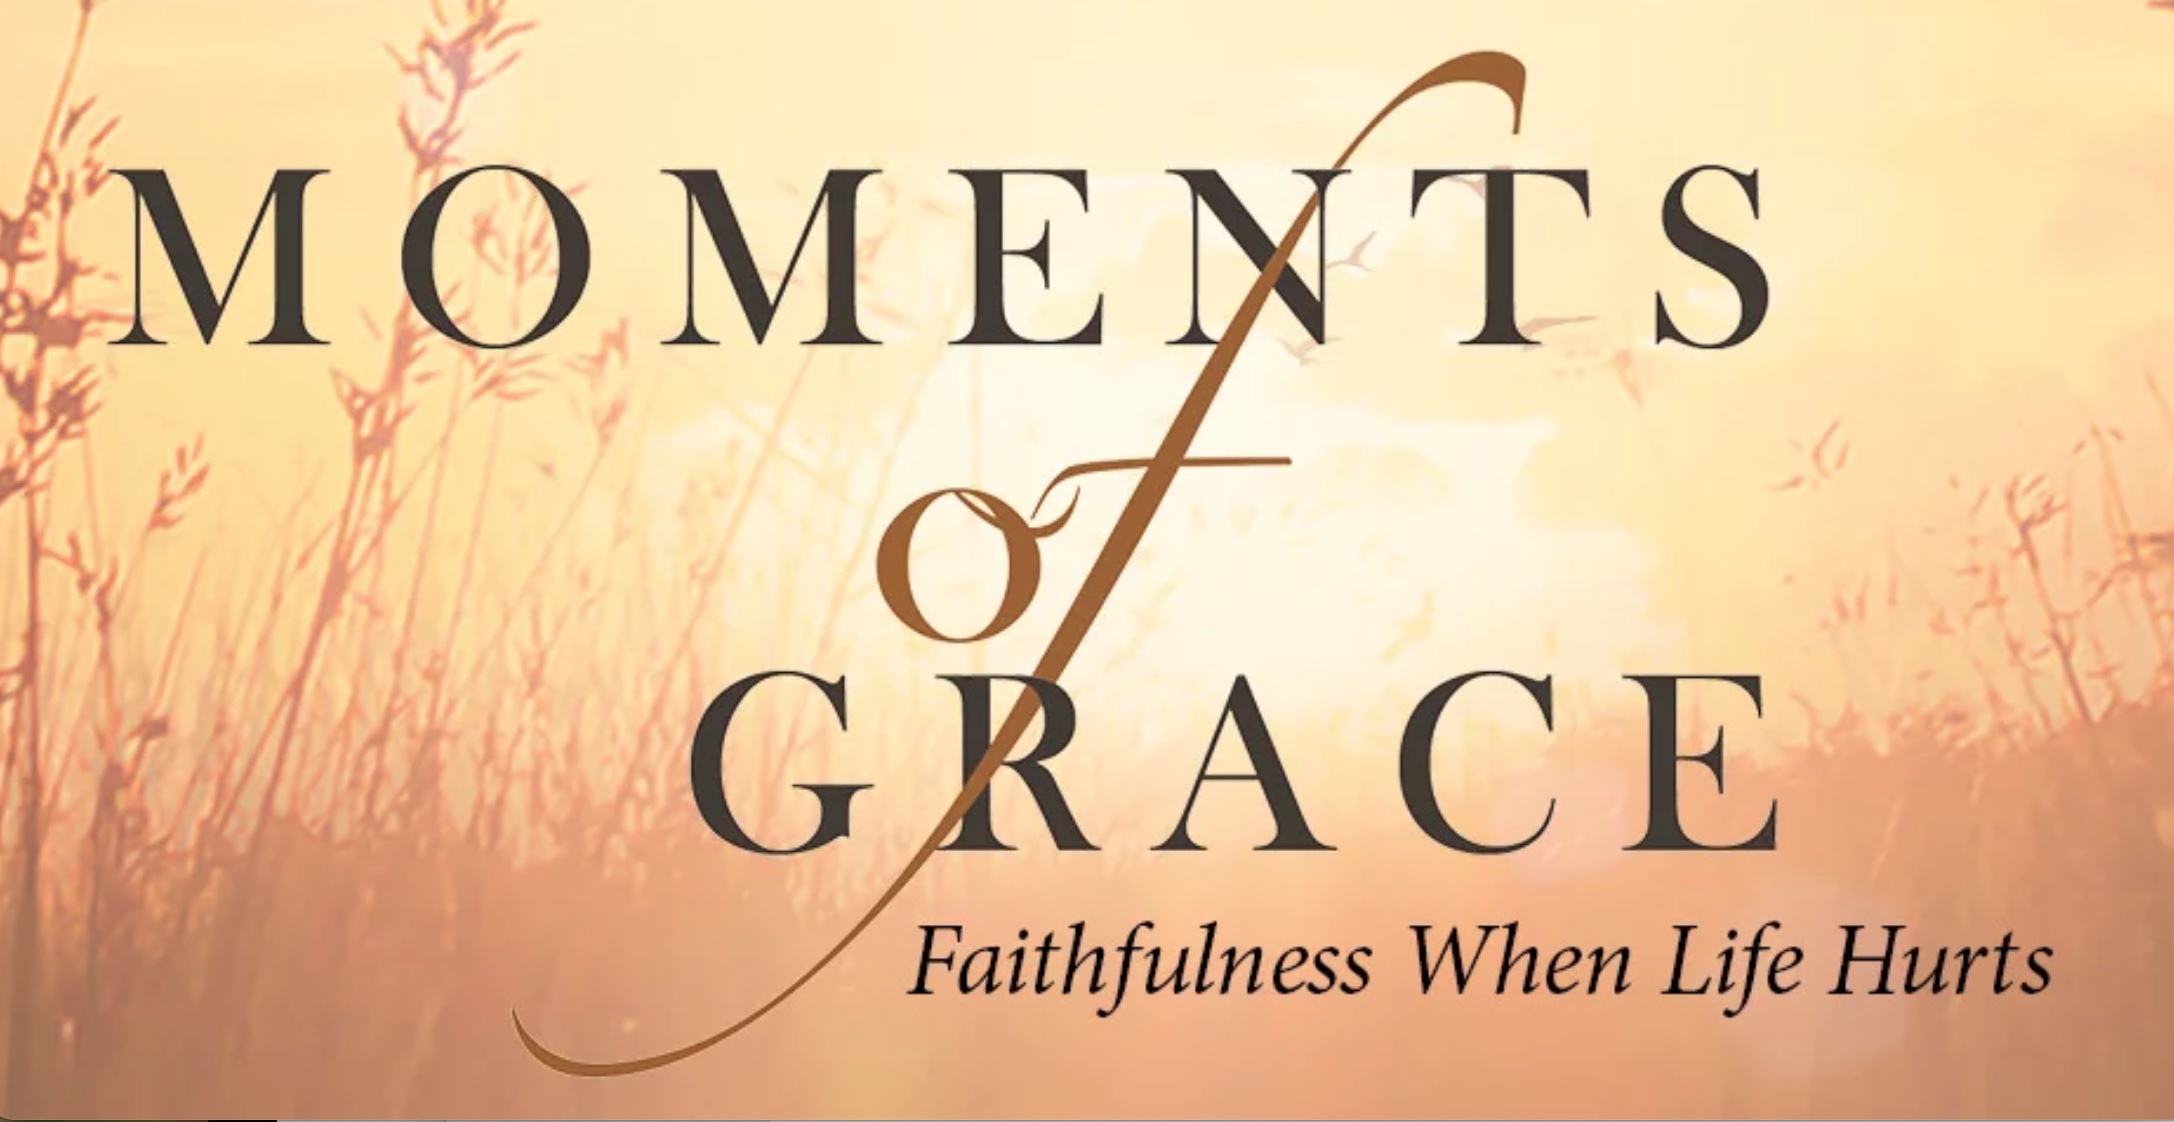 Moments of Grace Faithfulness When Life Hurts; image courtesy of Janae Hofer.